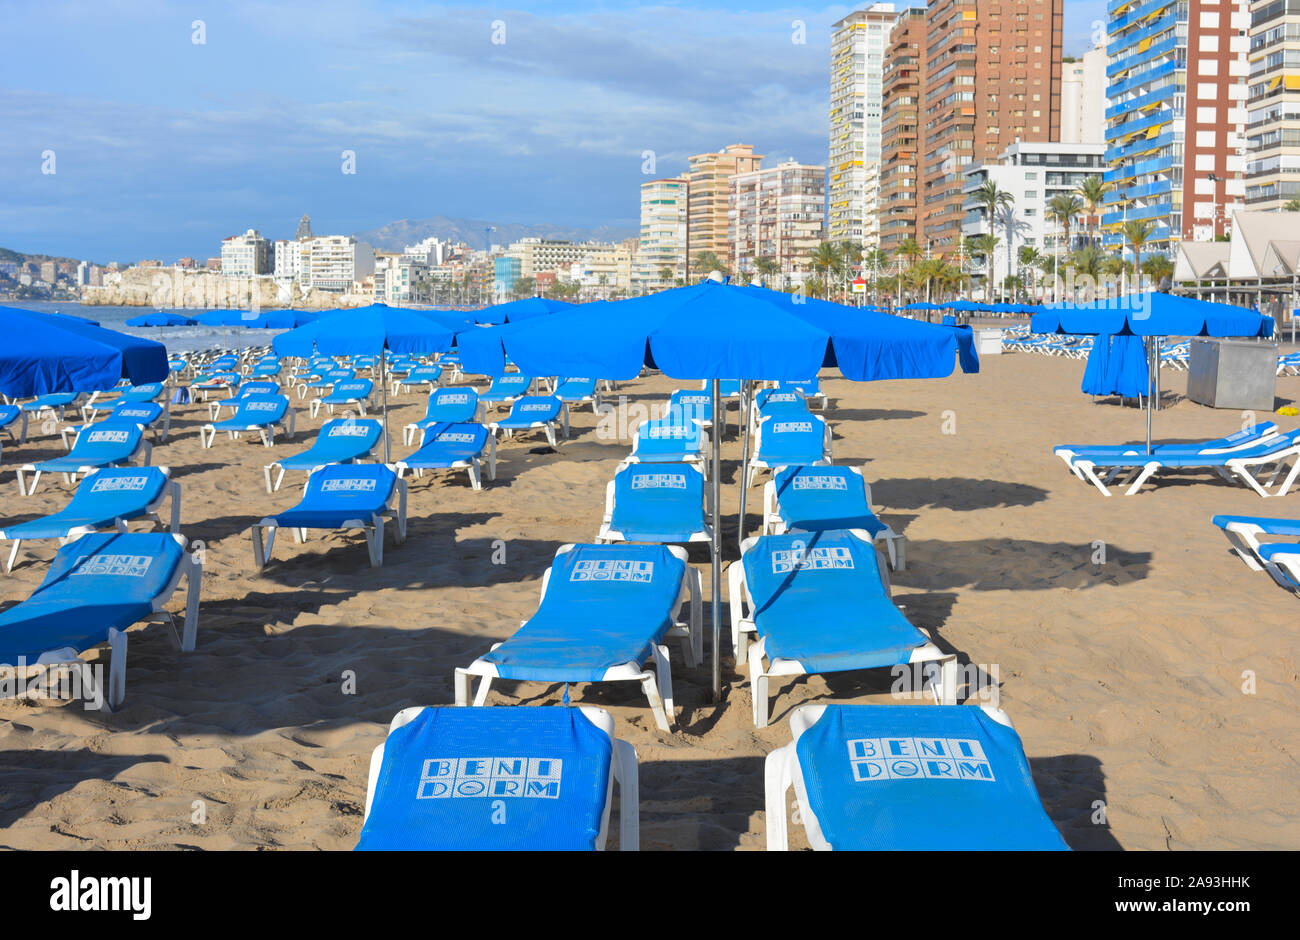 flexible radical Potencial Hamacas y sombrillas de playa para alquilar en La Playa de Levante, a la  mañana temprano. Benidorm, Alicante, España Fotografía de stock - Alamy